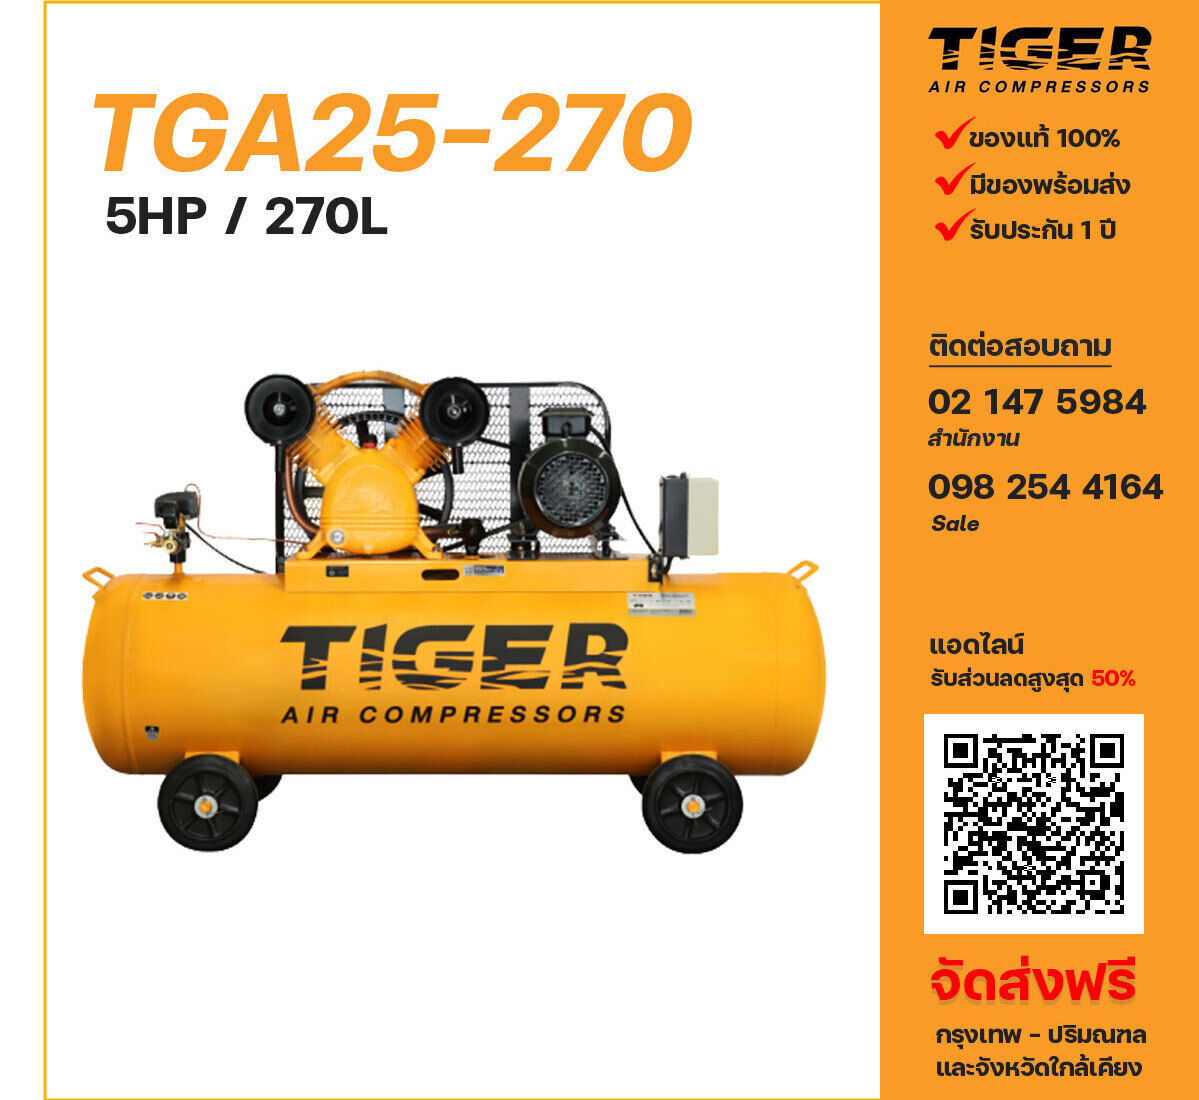 ปั๊มลมไทเกอร์ TIGER TGA25-270 380V ปั๊มลมลูกสูบ ขนาด 2 สูบ 5 แรงม้า 270 ลิตร TIGER พร้อมมอเตอร์ ไฟ 380V ส่งฟรี กรุงเทพฯ-ปริมณฑล รับประกัน 1 ปี